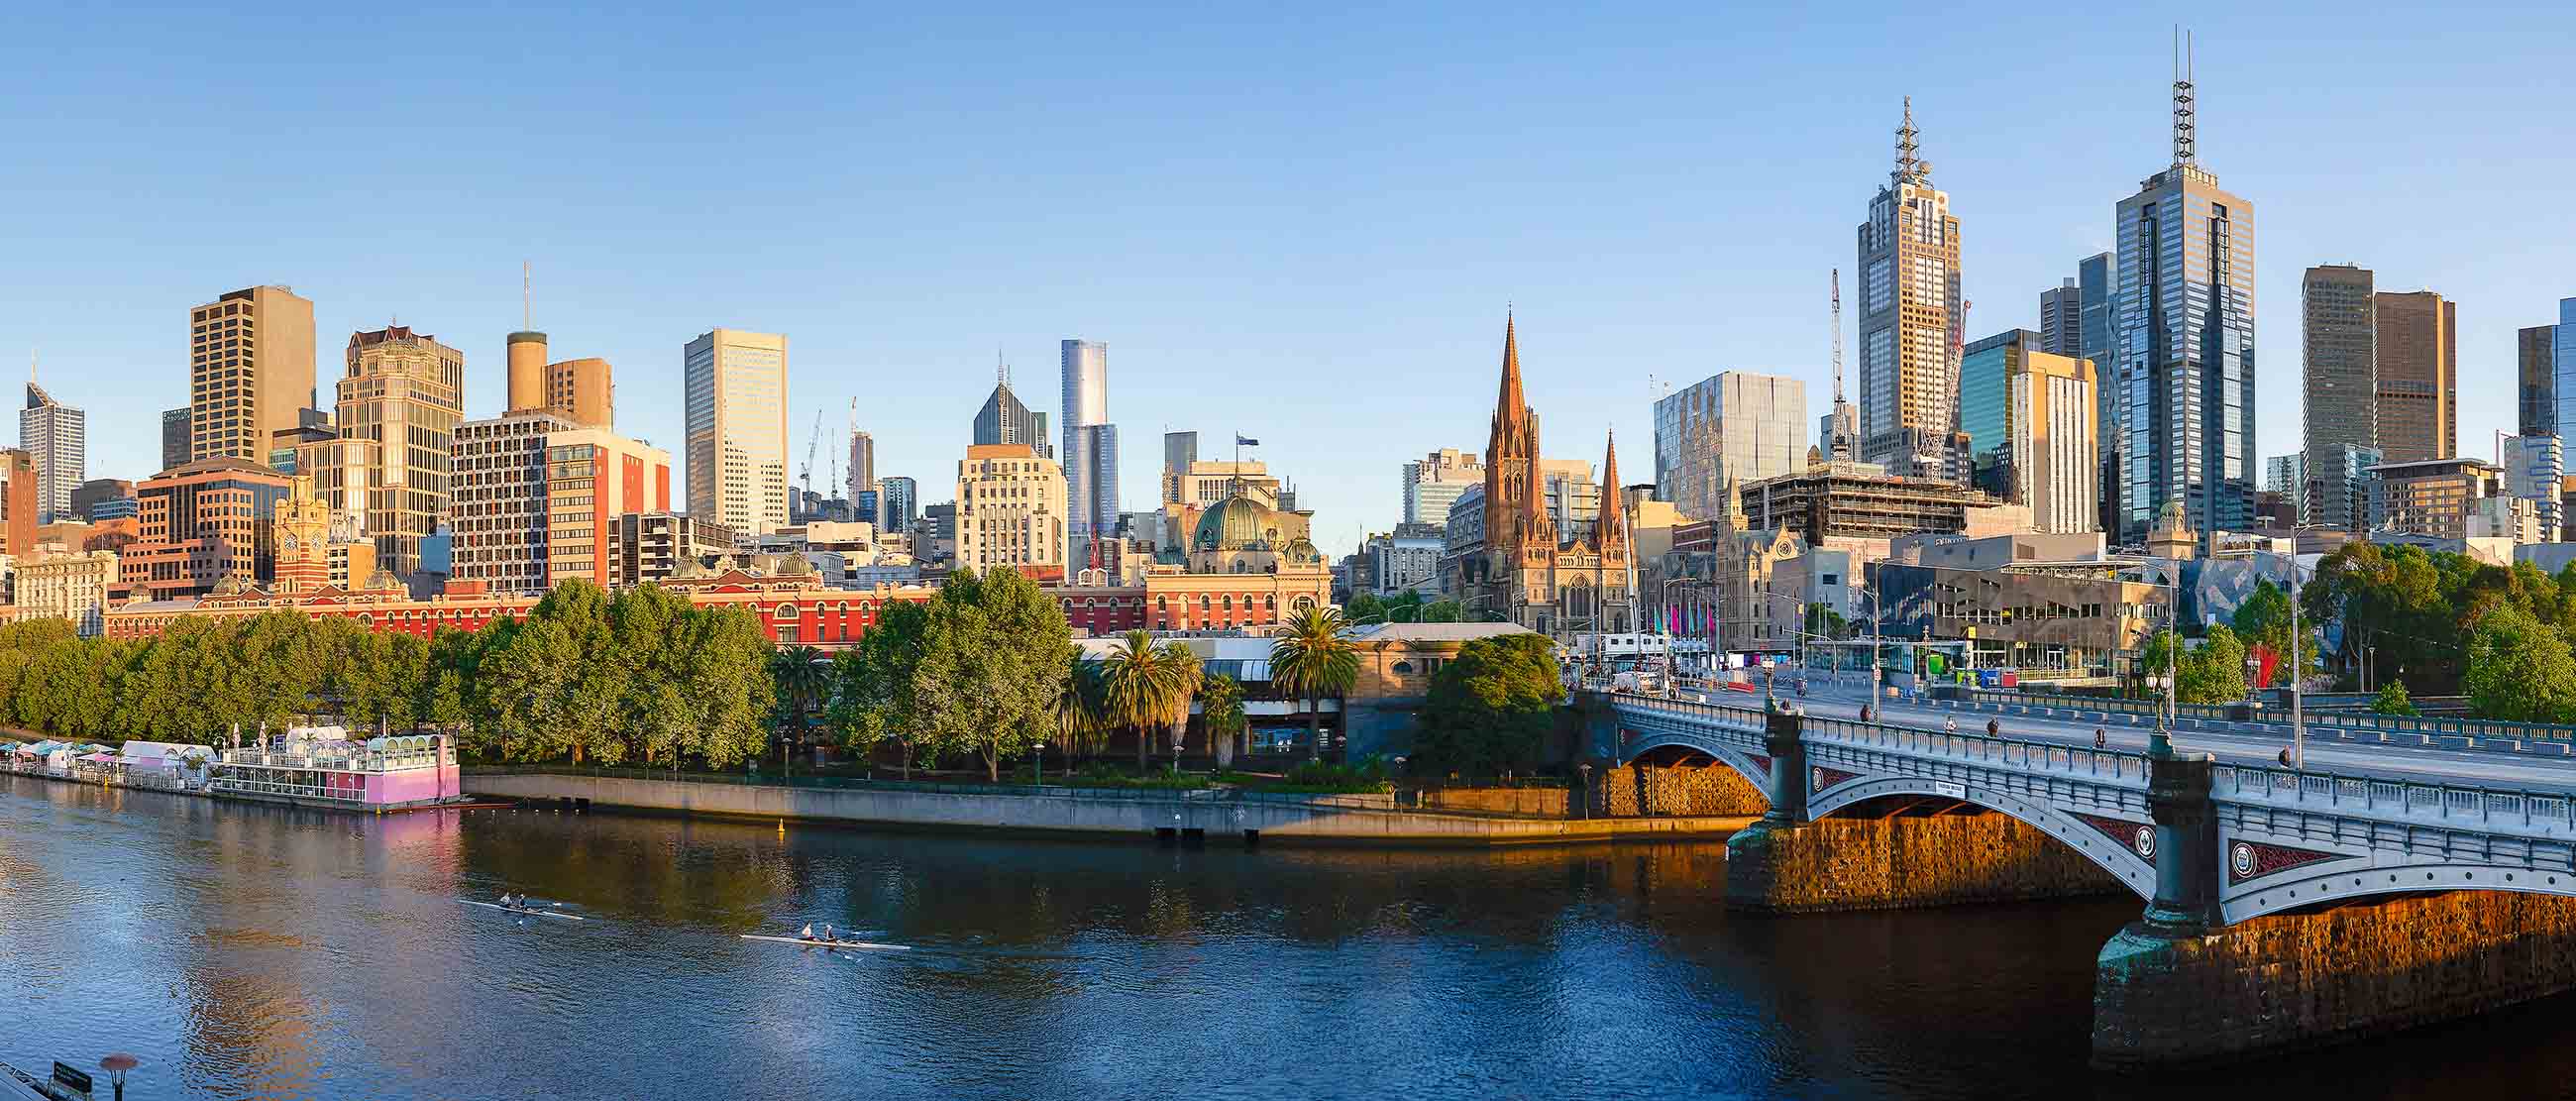 Thành phố Melbourne hiện đại nhưng vẫn mang chút màu hoài niệm của thời gian